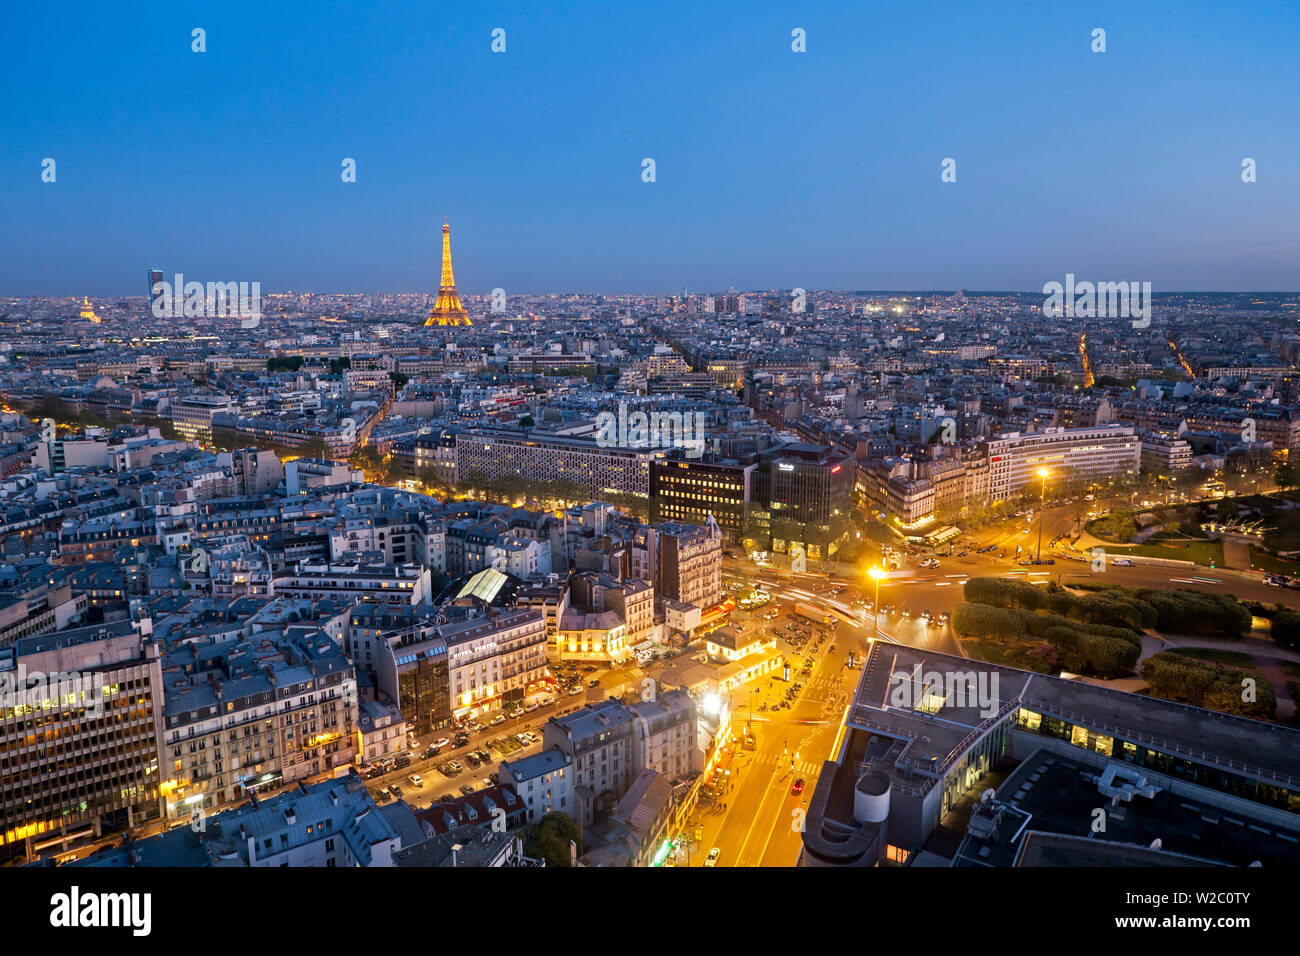 Vista in elevazione della città con la Torre Eiffel a distanza, Parigi, Francia, Europa Foto Stock